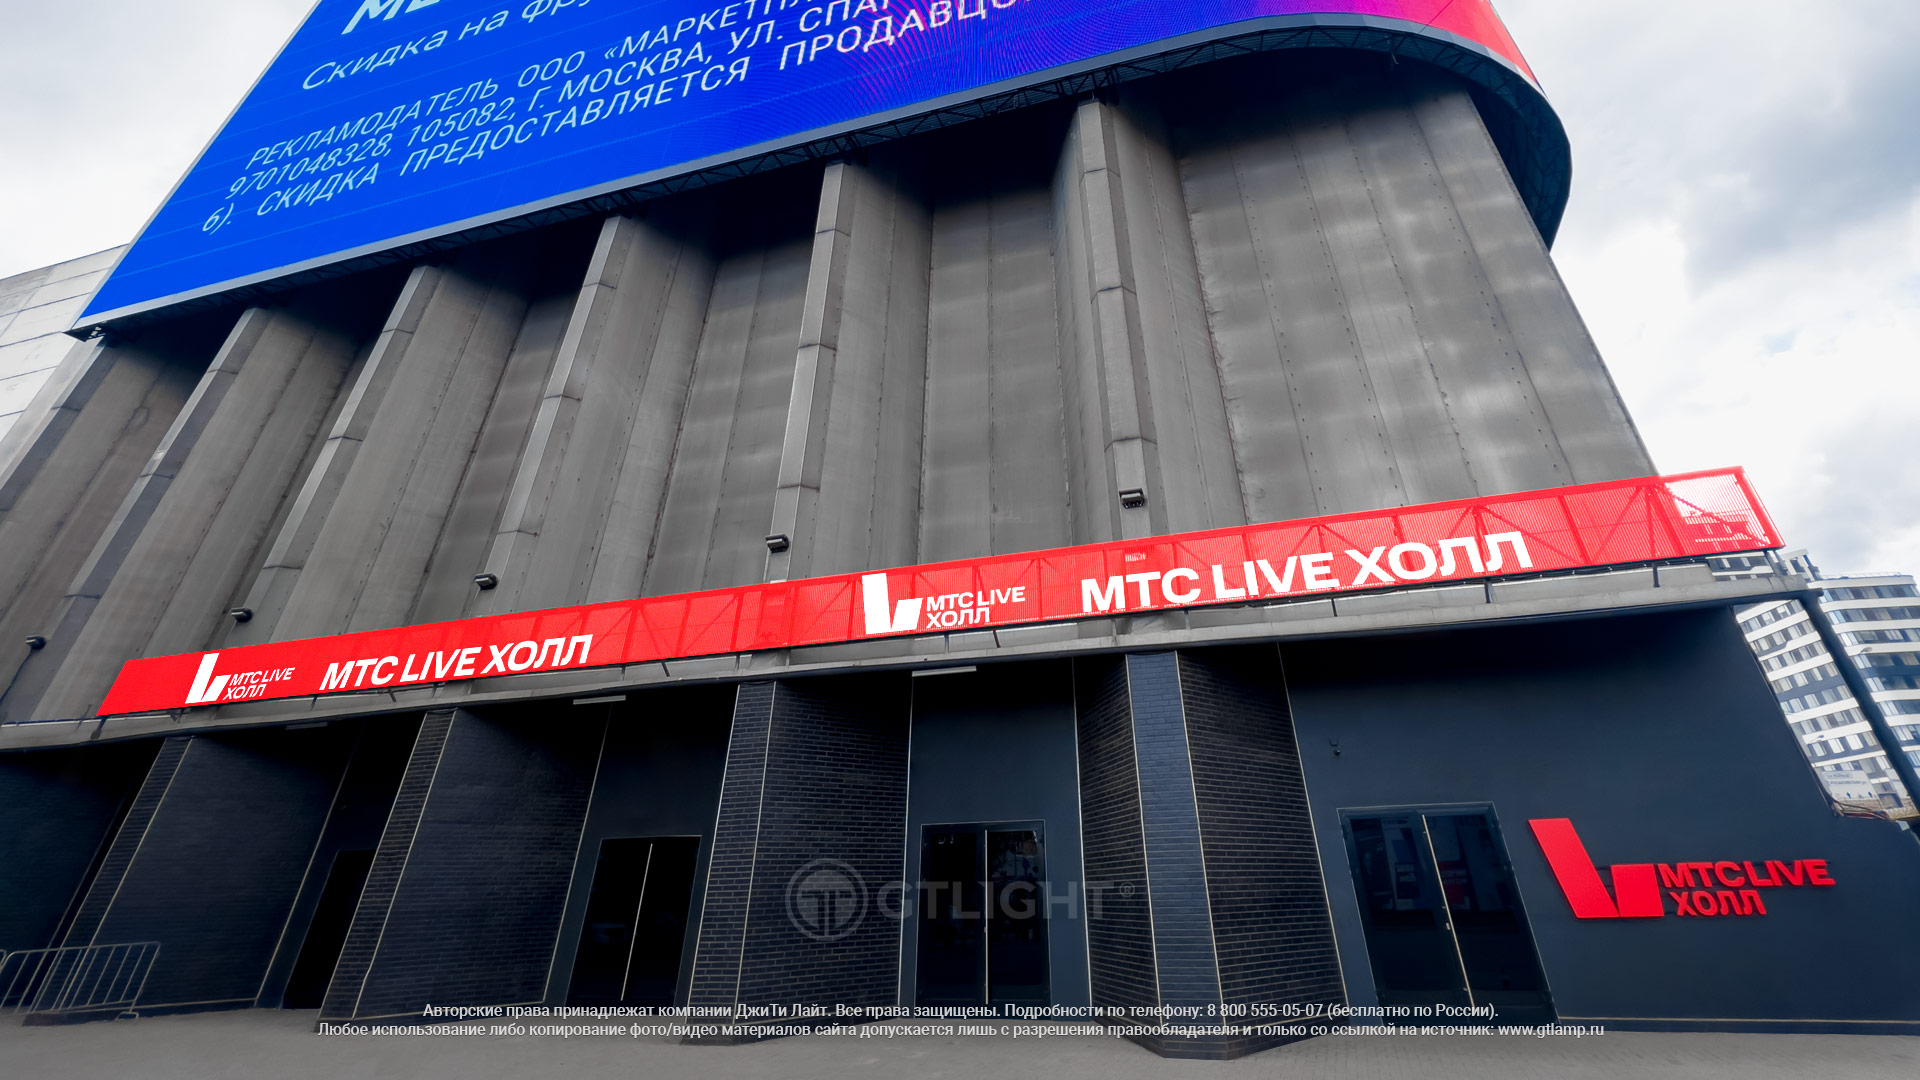 Светодиодный реечный медиафасад для концертного зала «МТС Live Холл», Москва — ДжиТи Лайт. Россия, фото 2